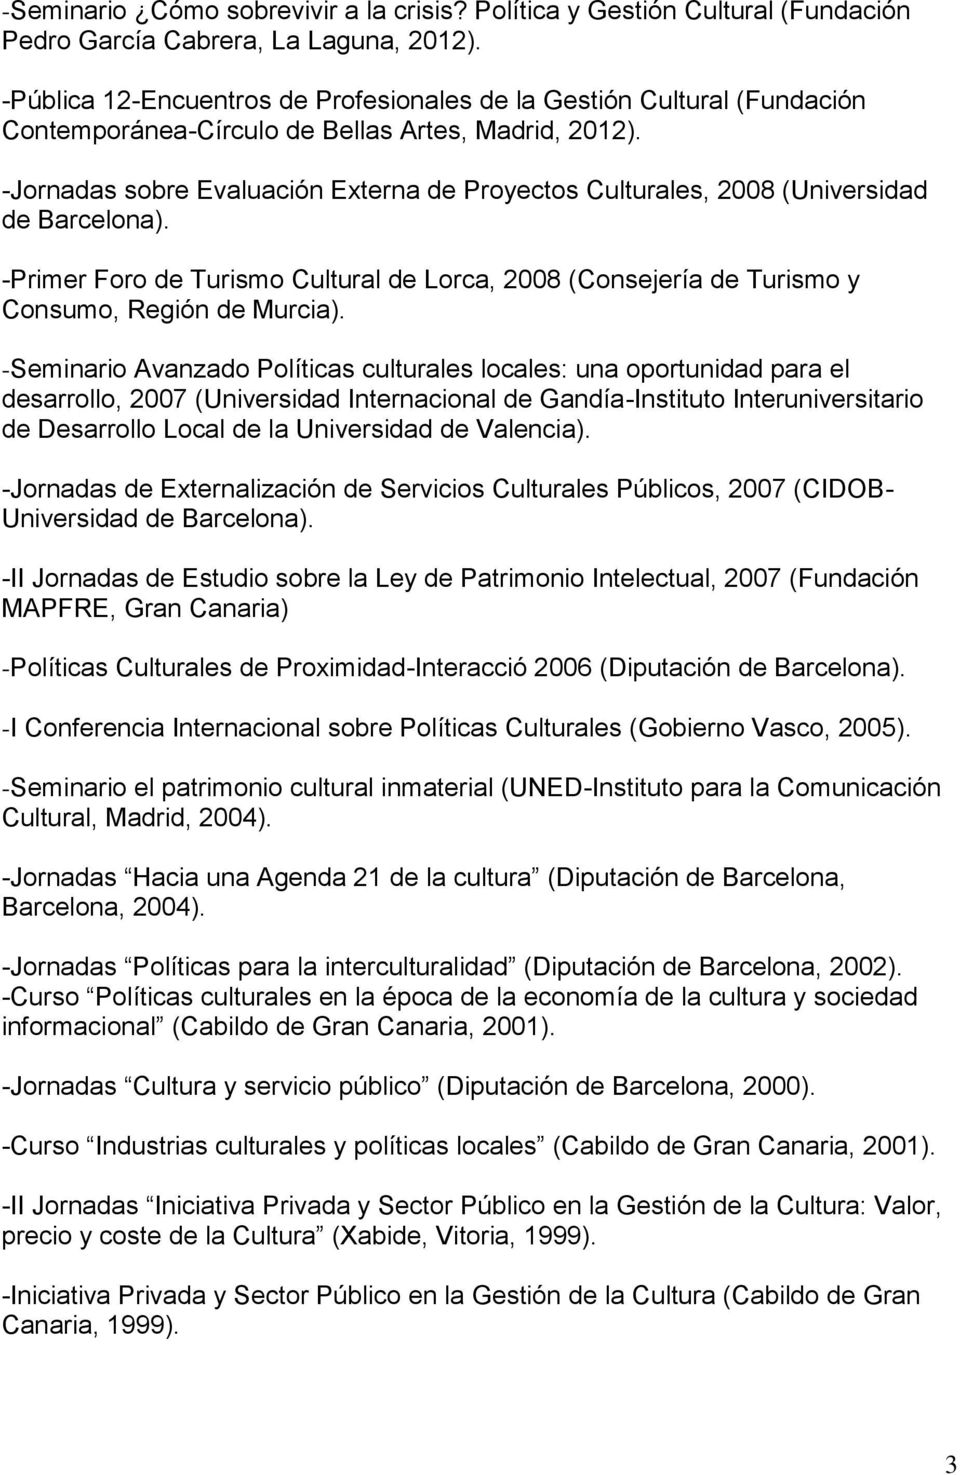 -Jornadas sobre Evaluación Externa de Proyectos Culturales, 2008 (Universidad de Barcelona). -Primer Foro de Turismo Cultural de Lorca, 2008 (Consejería de Turismo y Consumo, Región de Murcia).